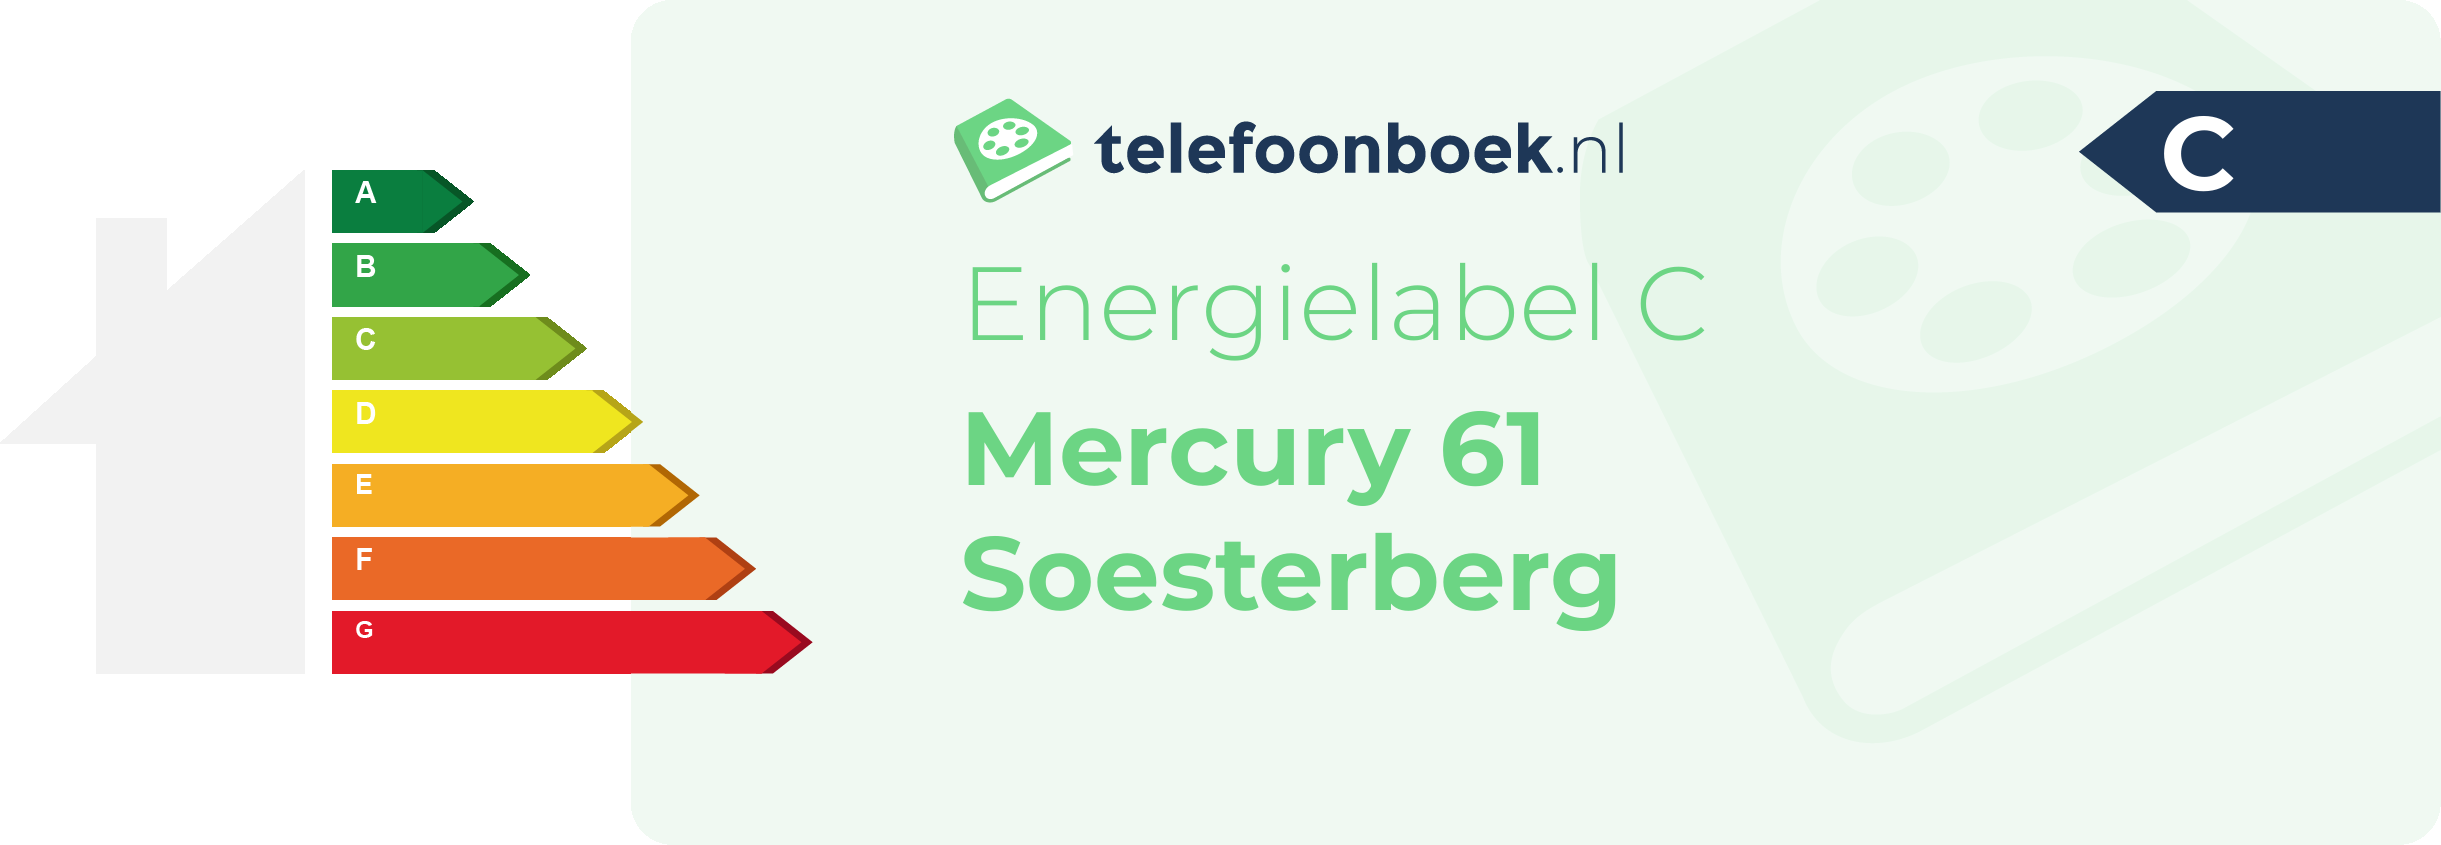 Energielabel Mercury 61 Soesterberg